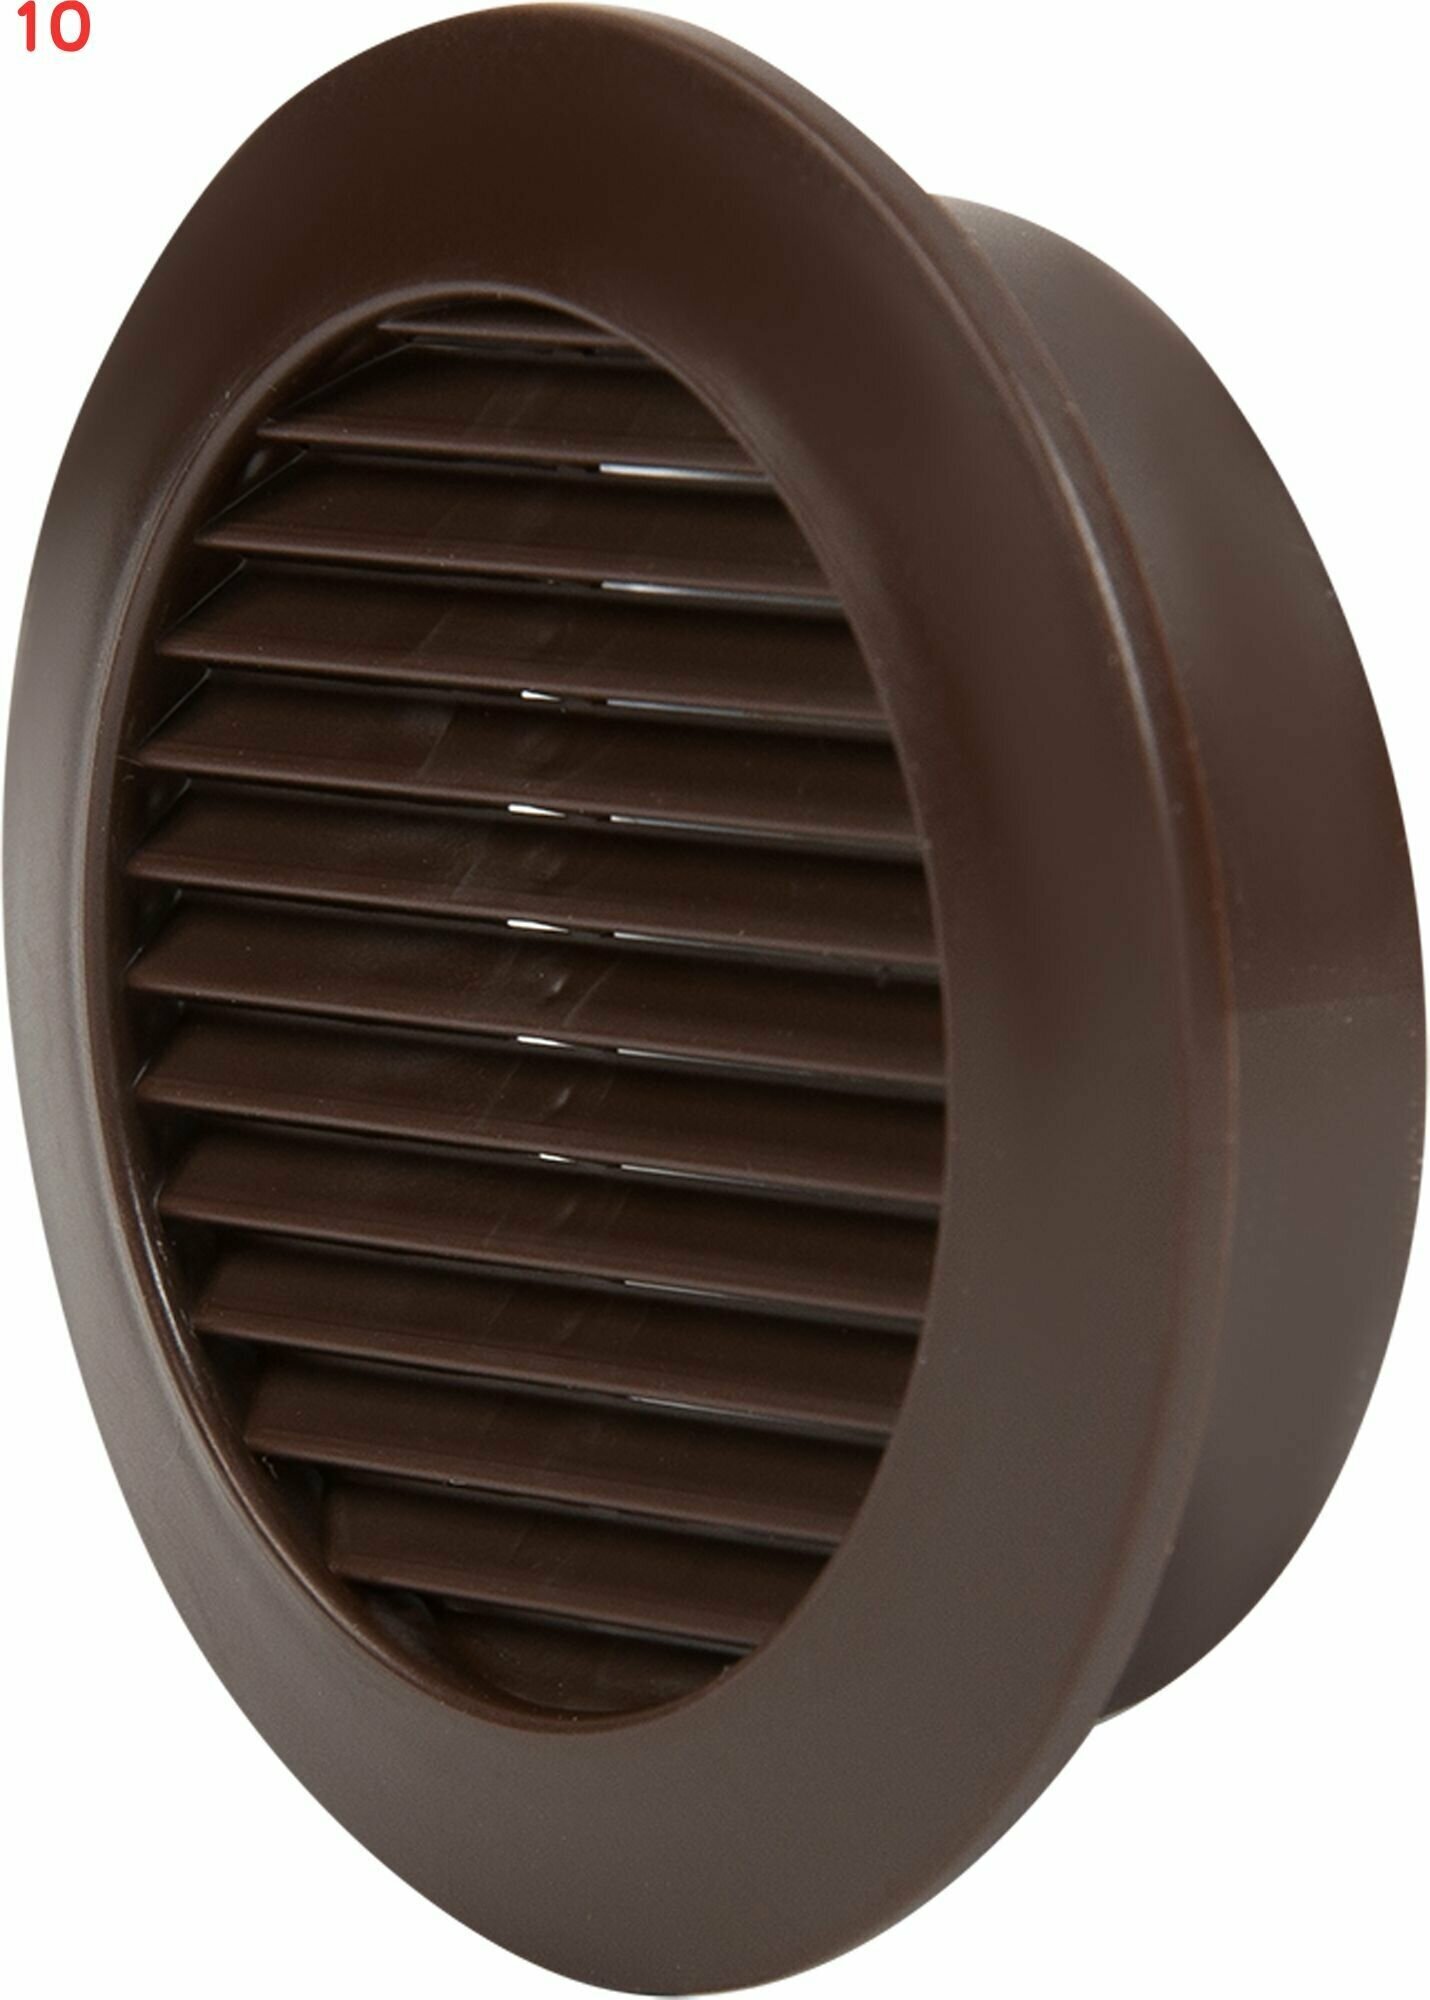 Решётка вентиляционная D58 мм полистирол цвет коричневый (10 шт.)